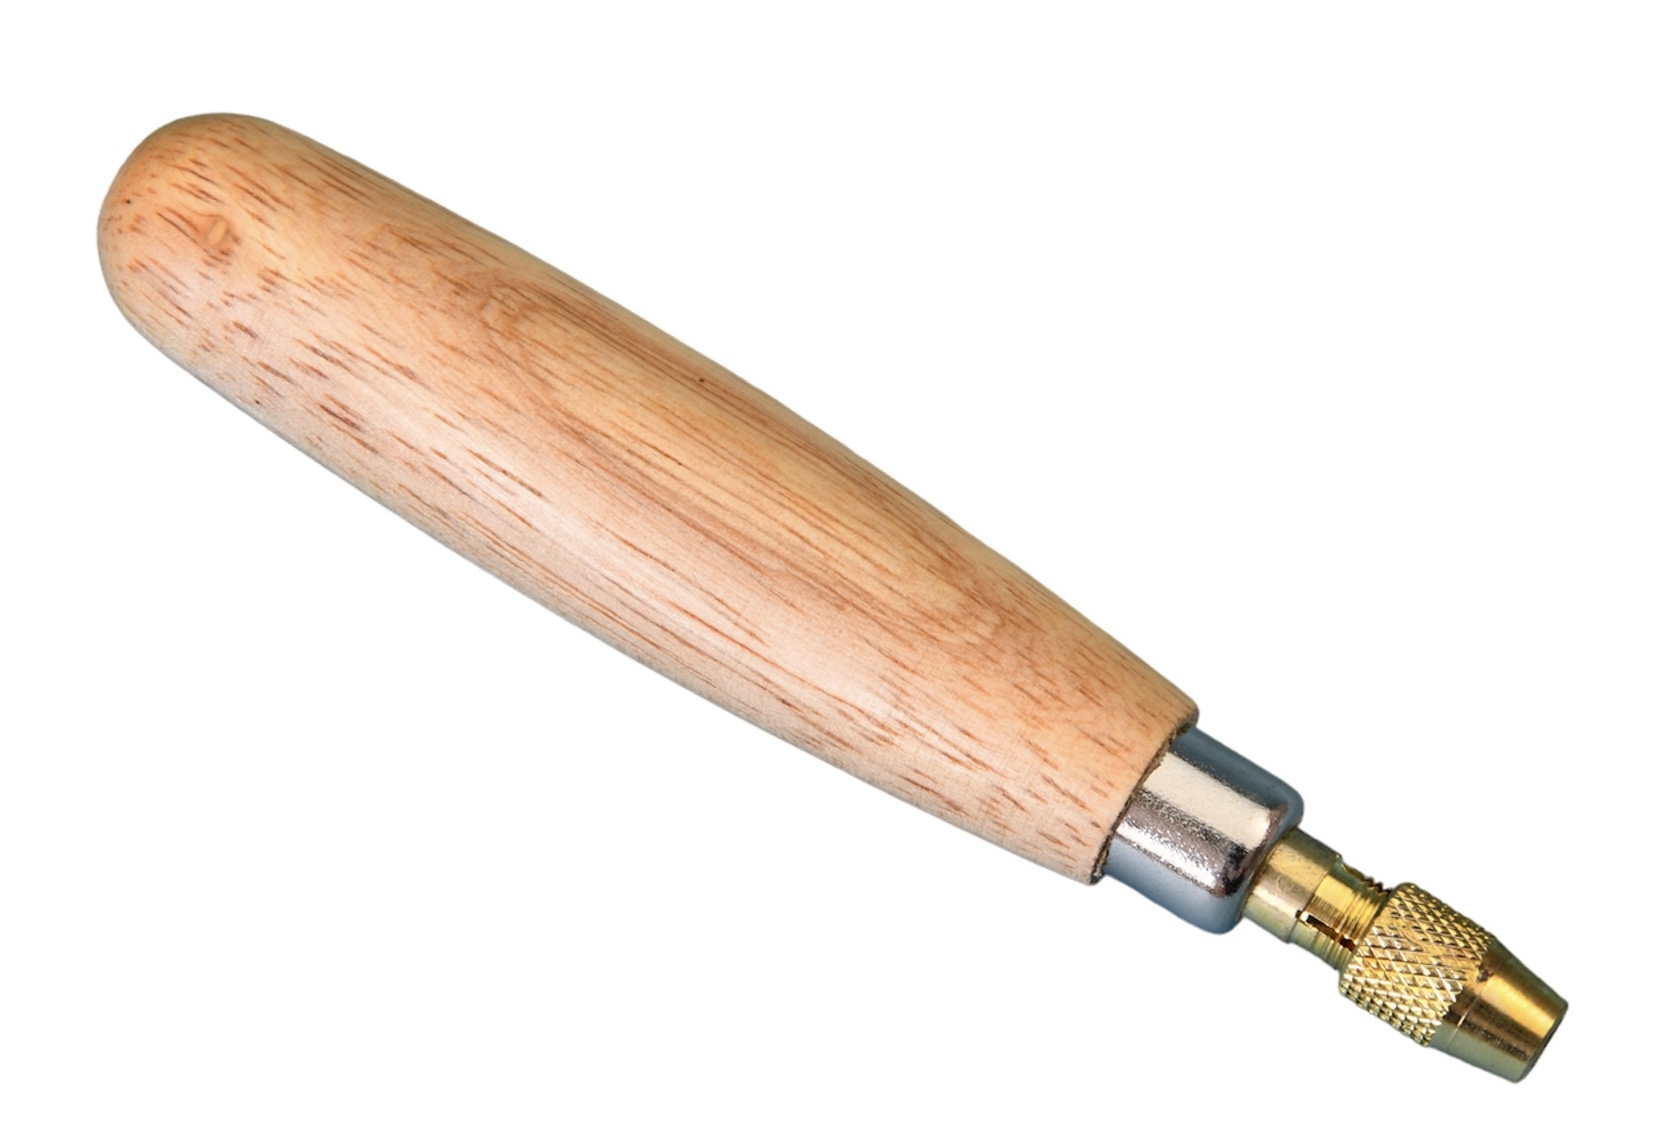 72519 Hardwood Needle File Handle with Brass Ferrule.